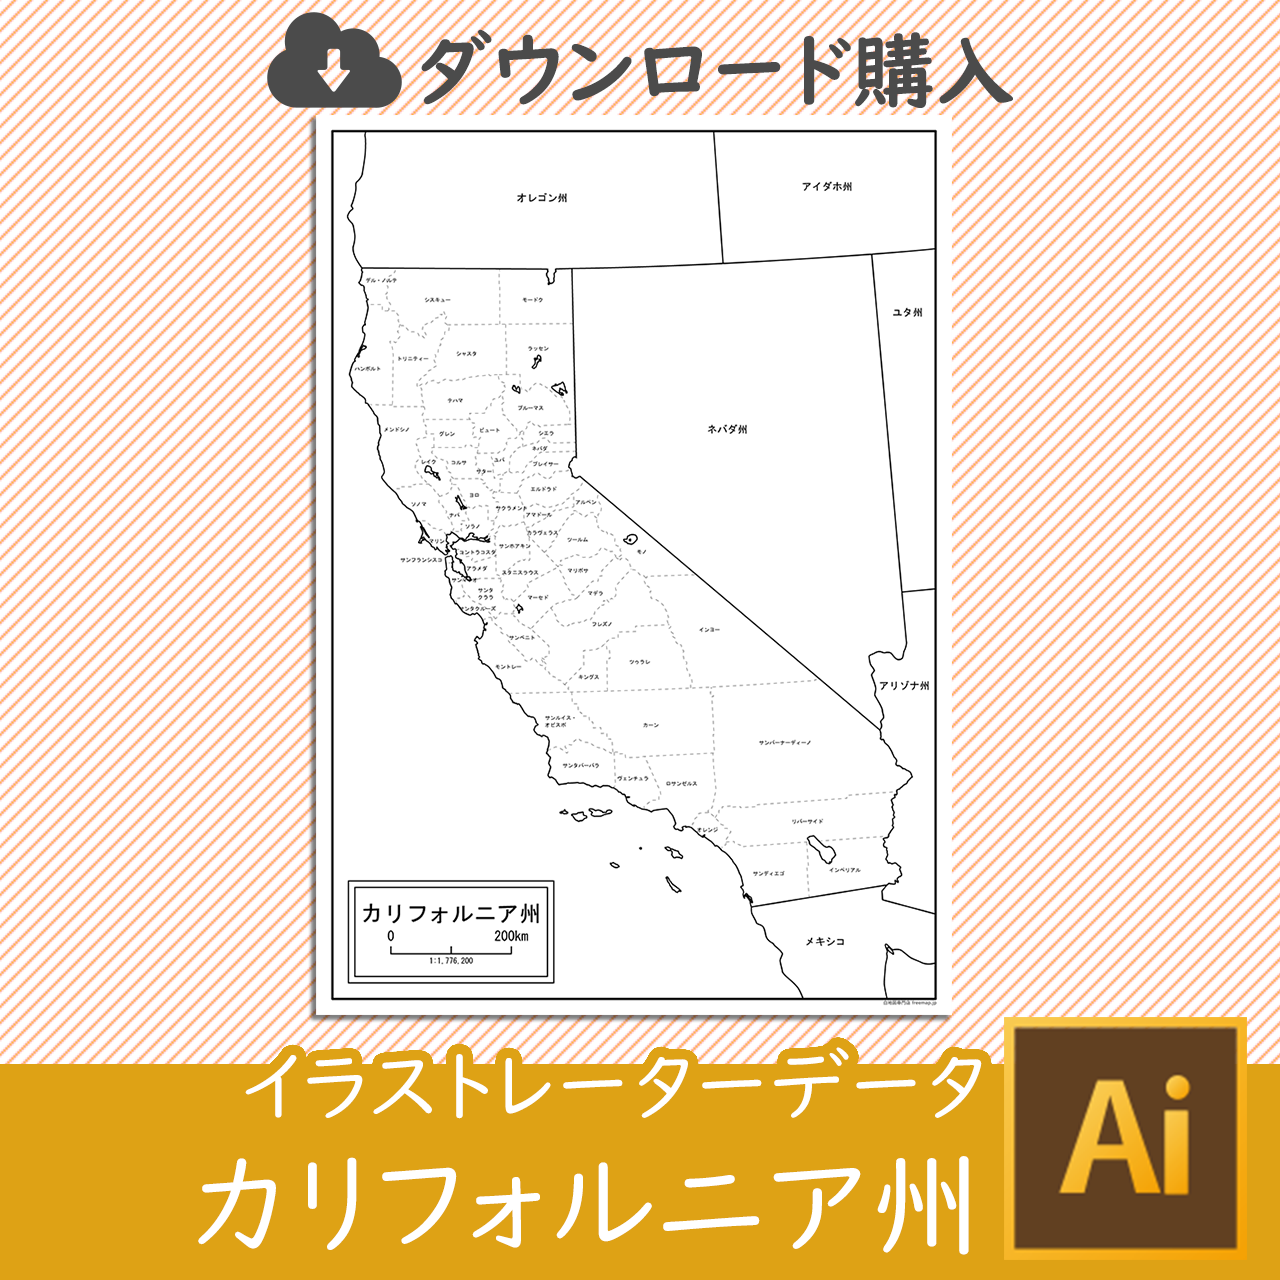 カリフォルニア州のaiデータのサムネイル画像